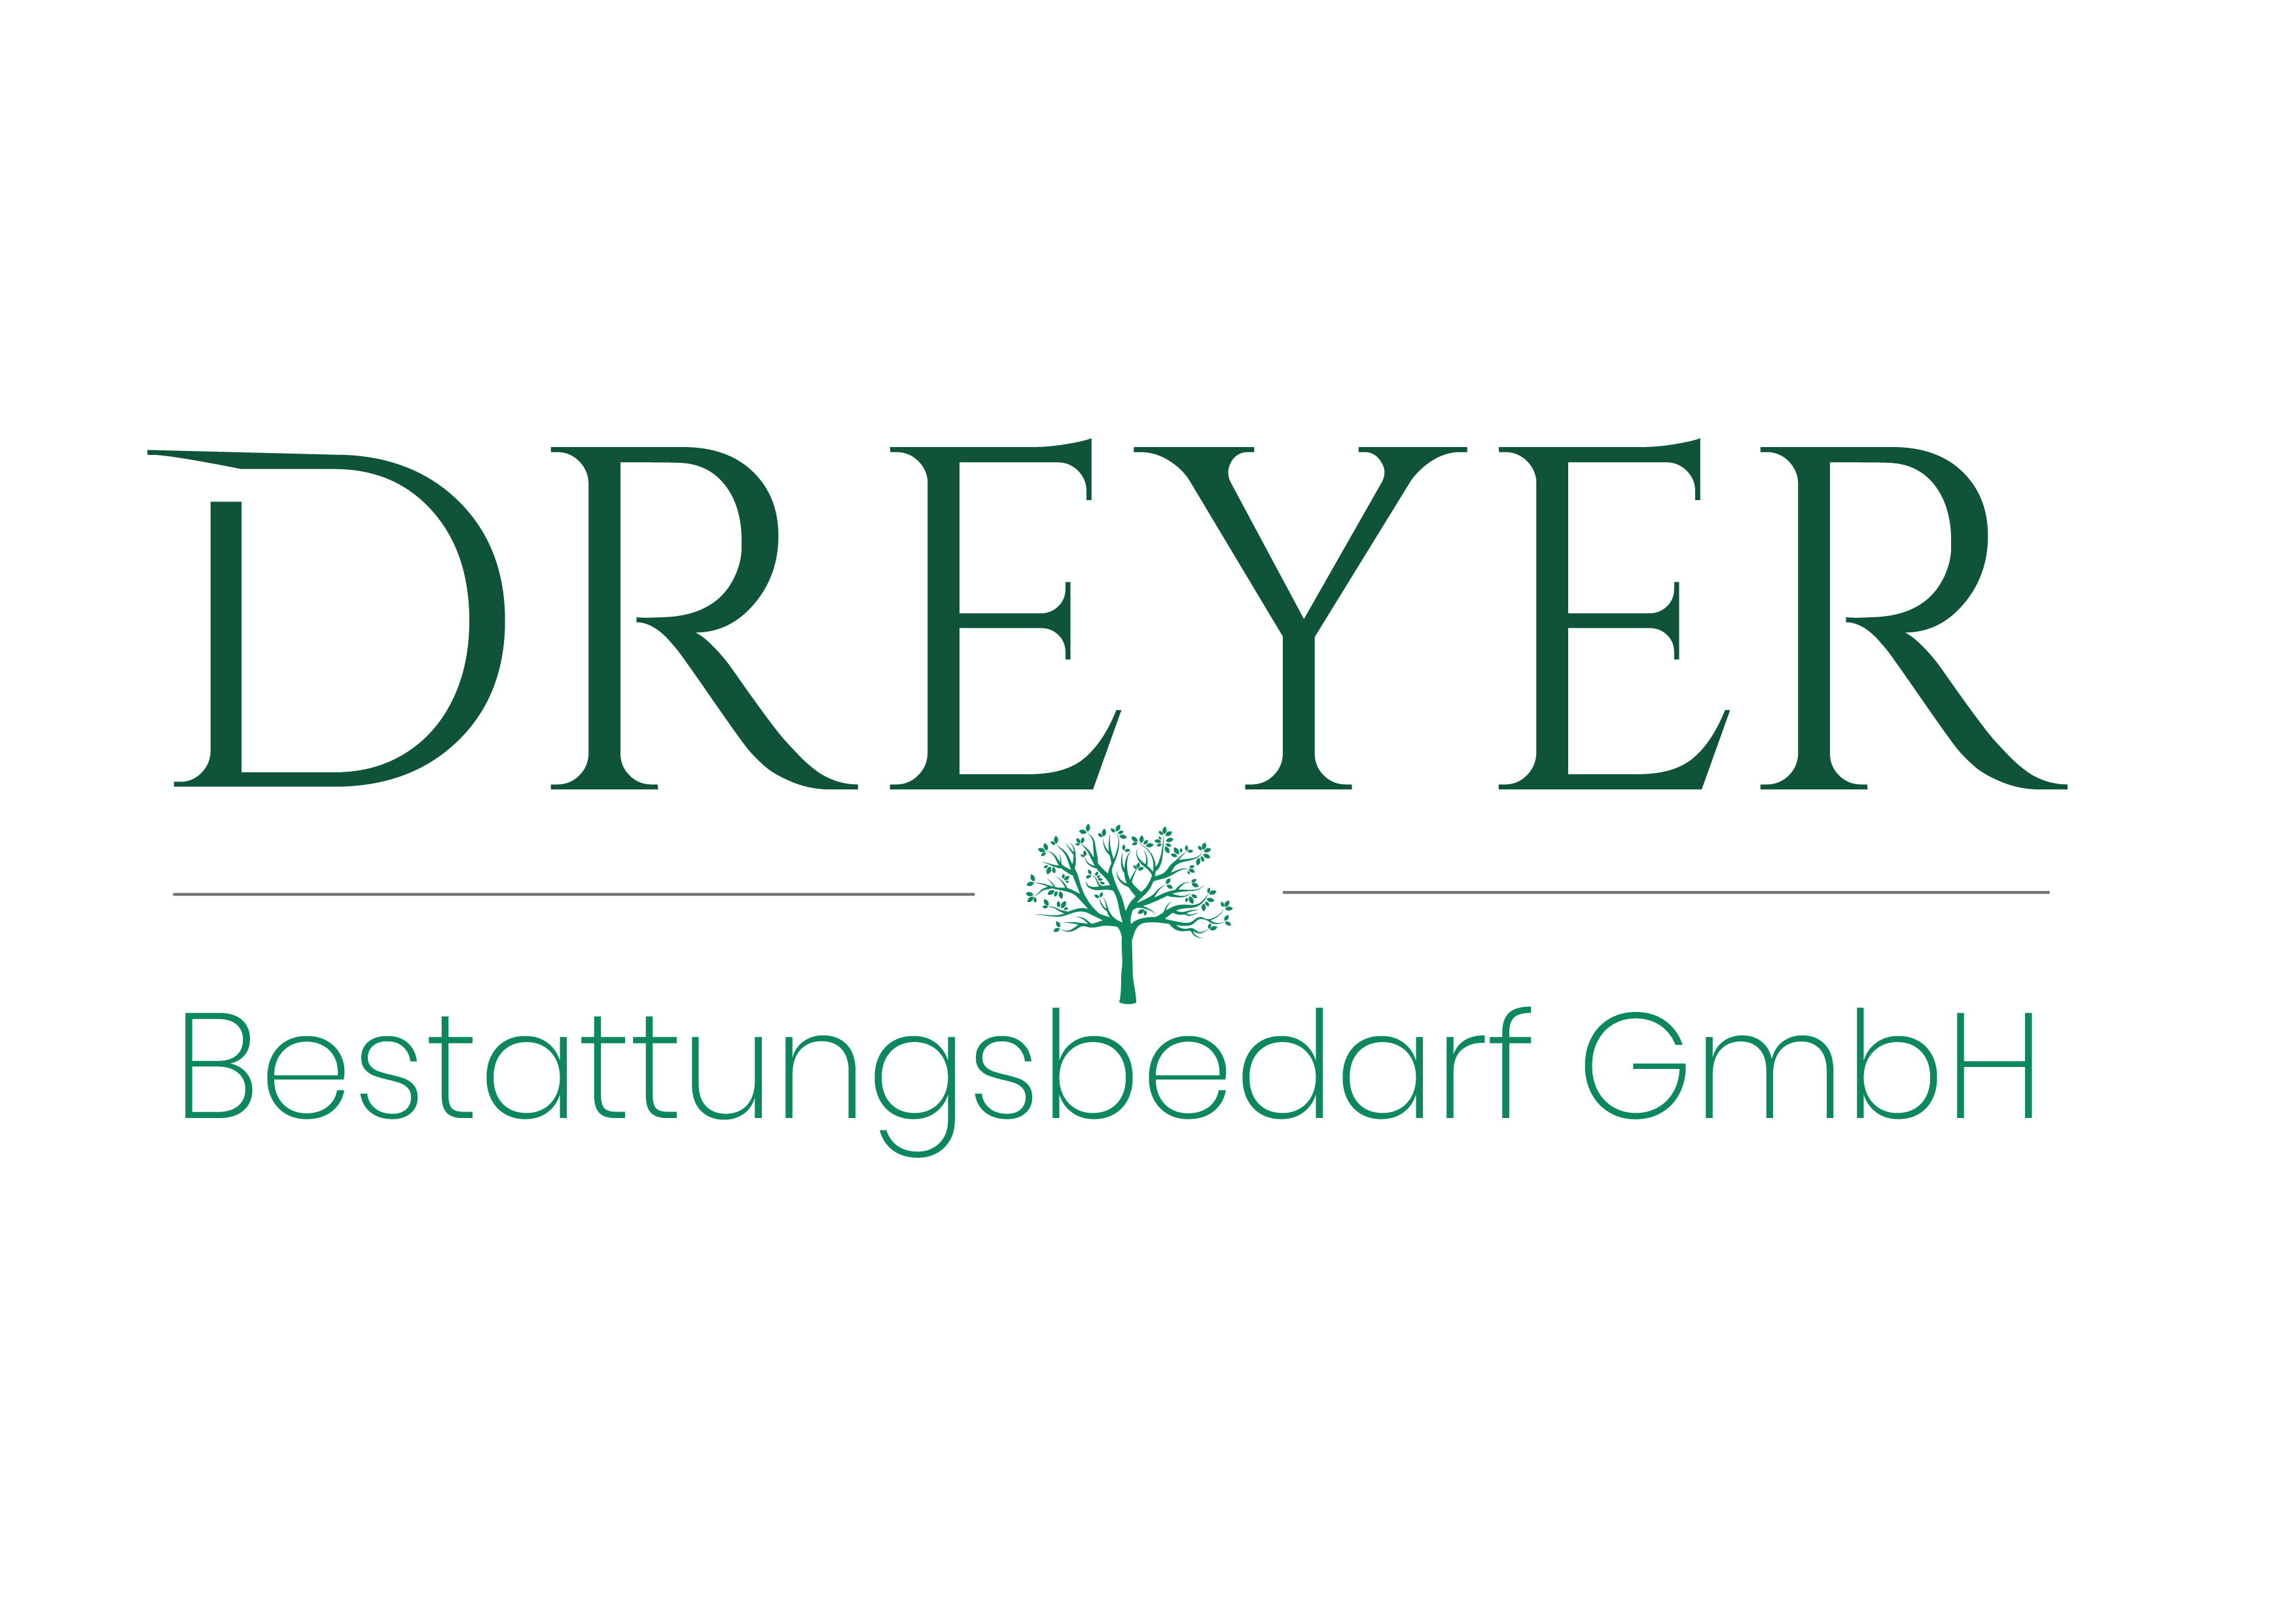 Dreyer Bestattungsbedarf GmbH